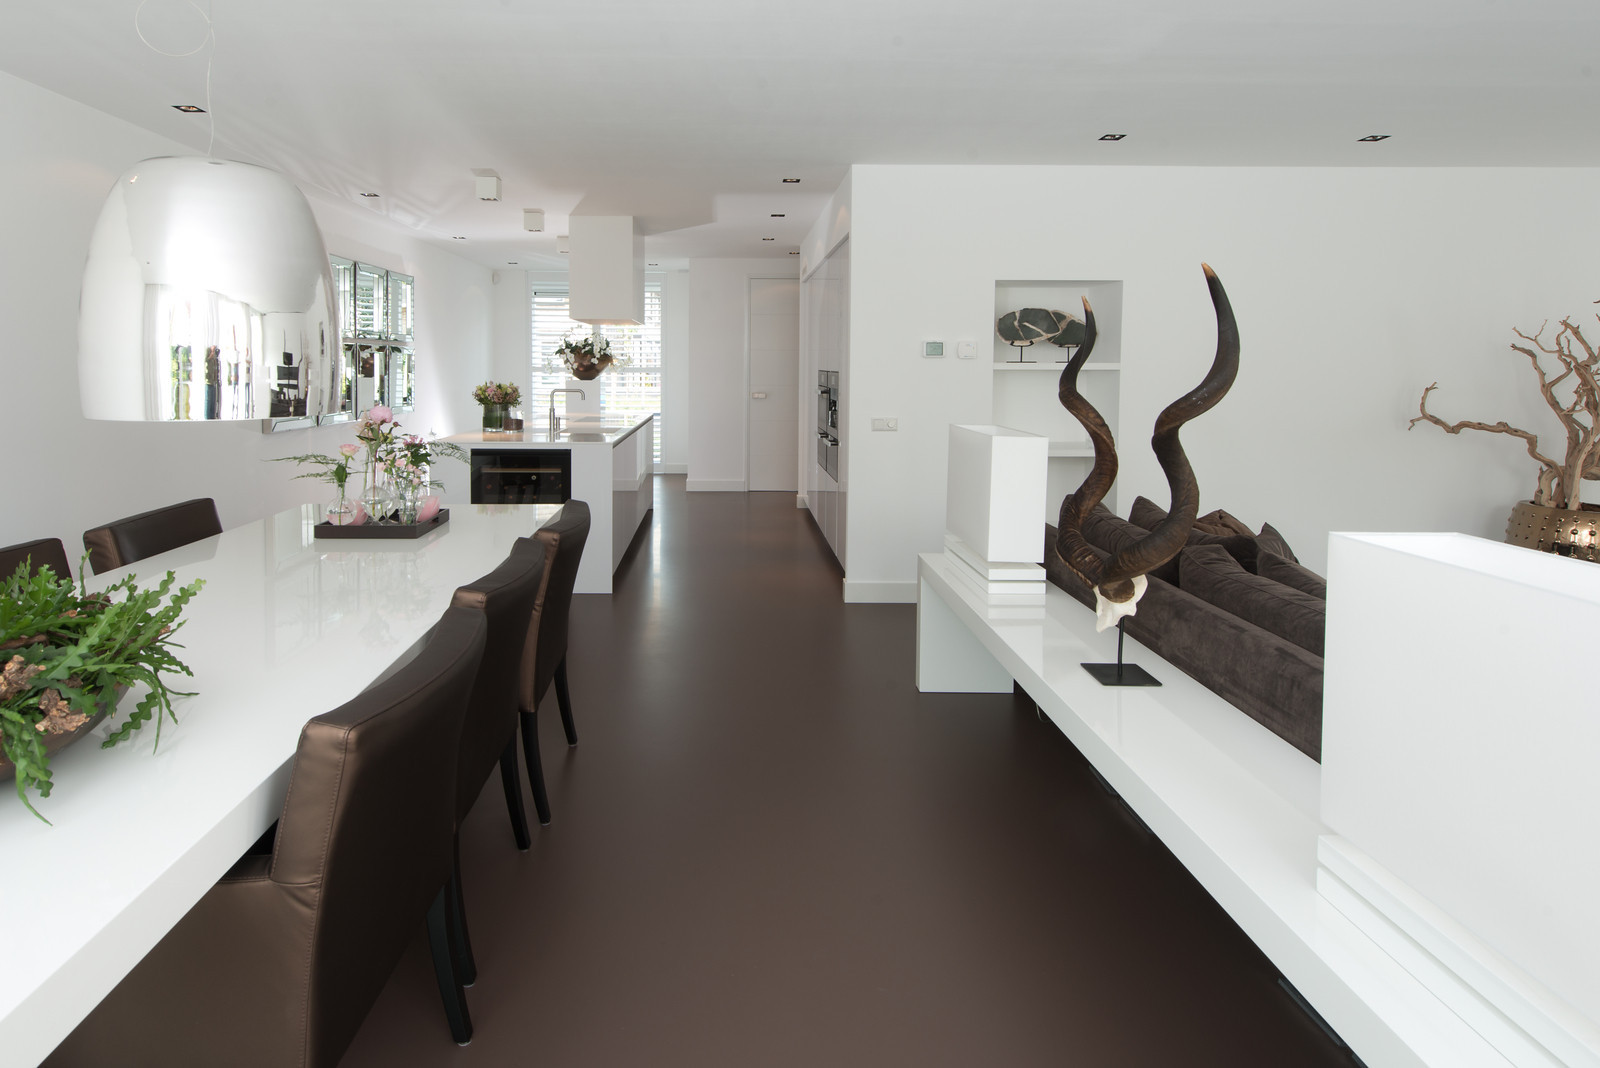 Binnenkijken bij... Italiaanse design keuken van Snaidero in Bleiswijk - via Tieleman Keukens 